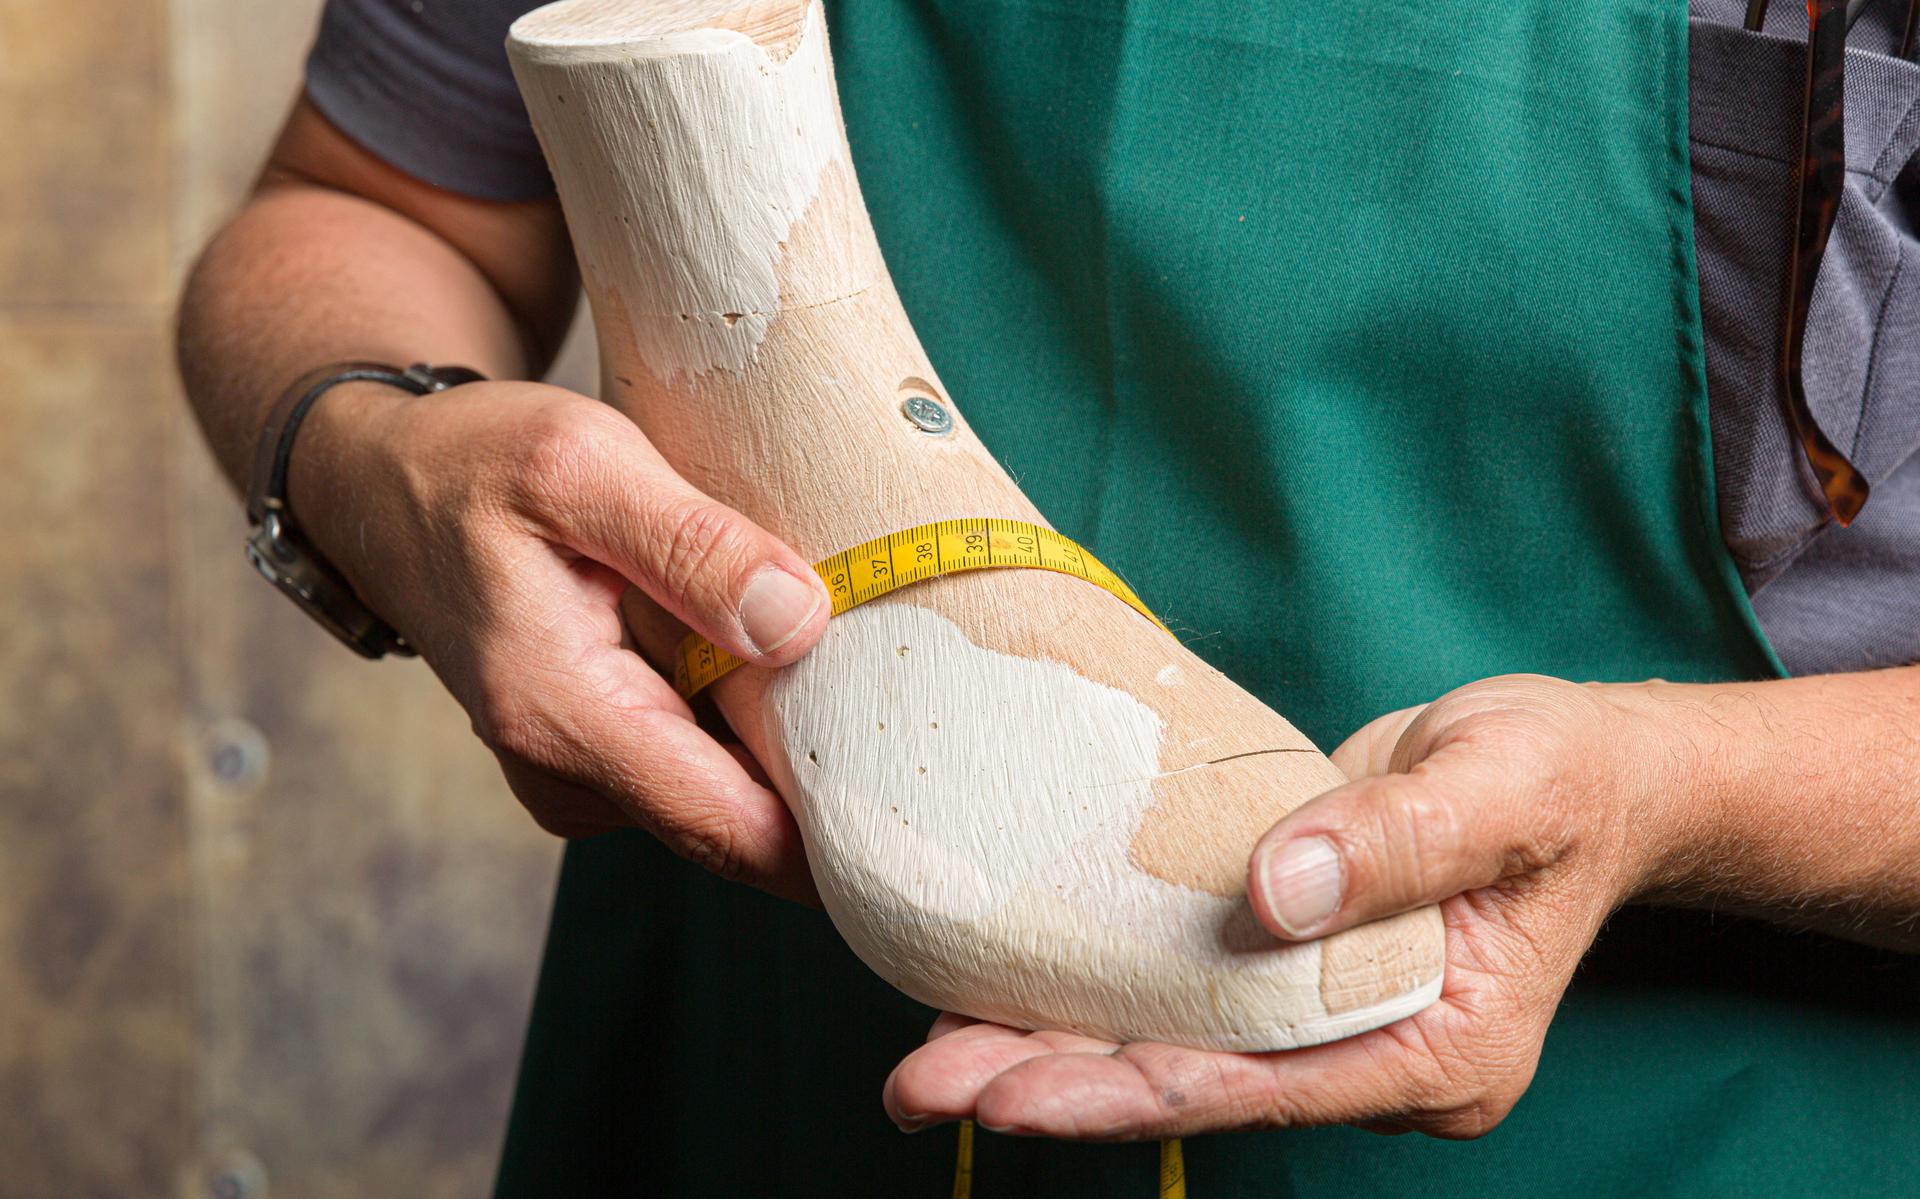 Orthopedisch schoenmaker die de kwaliteit van een houten leest controleert met behulp van een meetlint